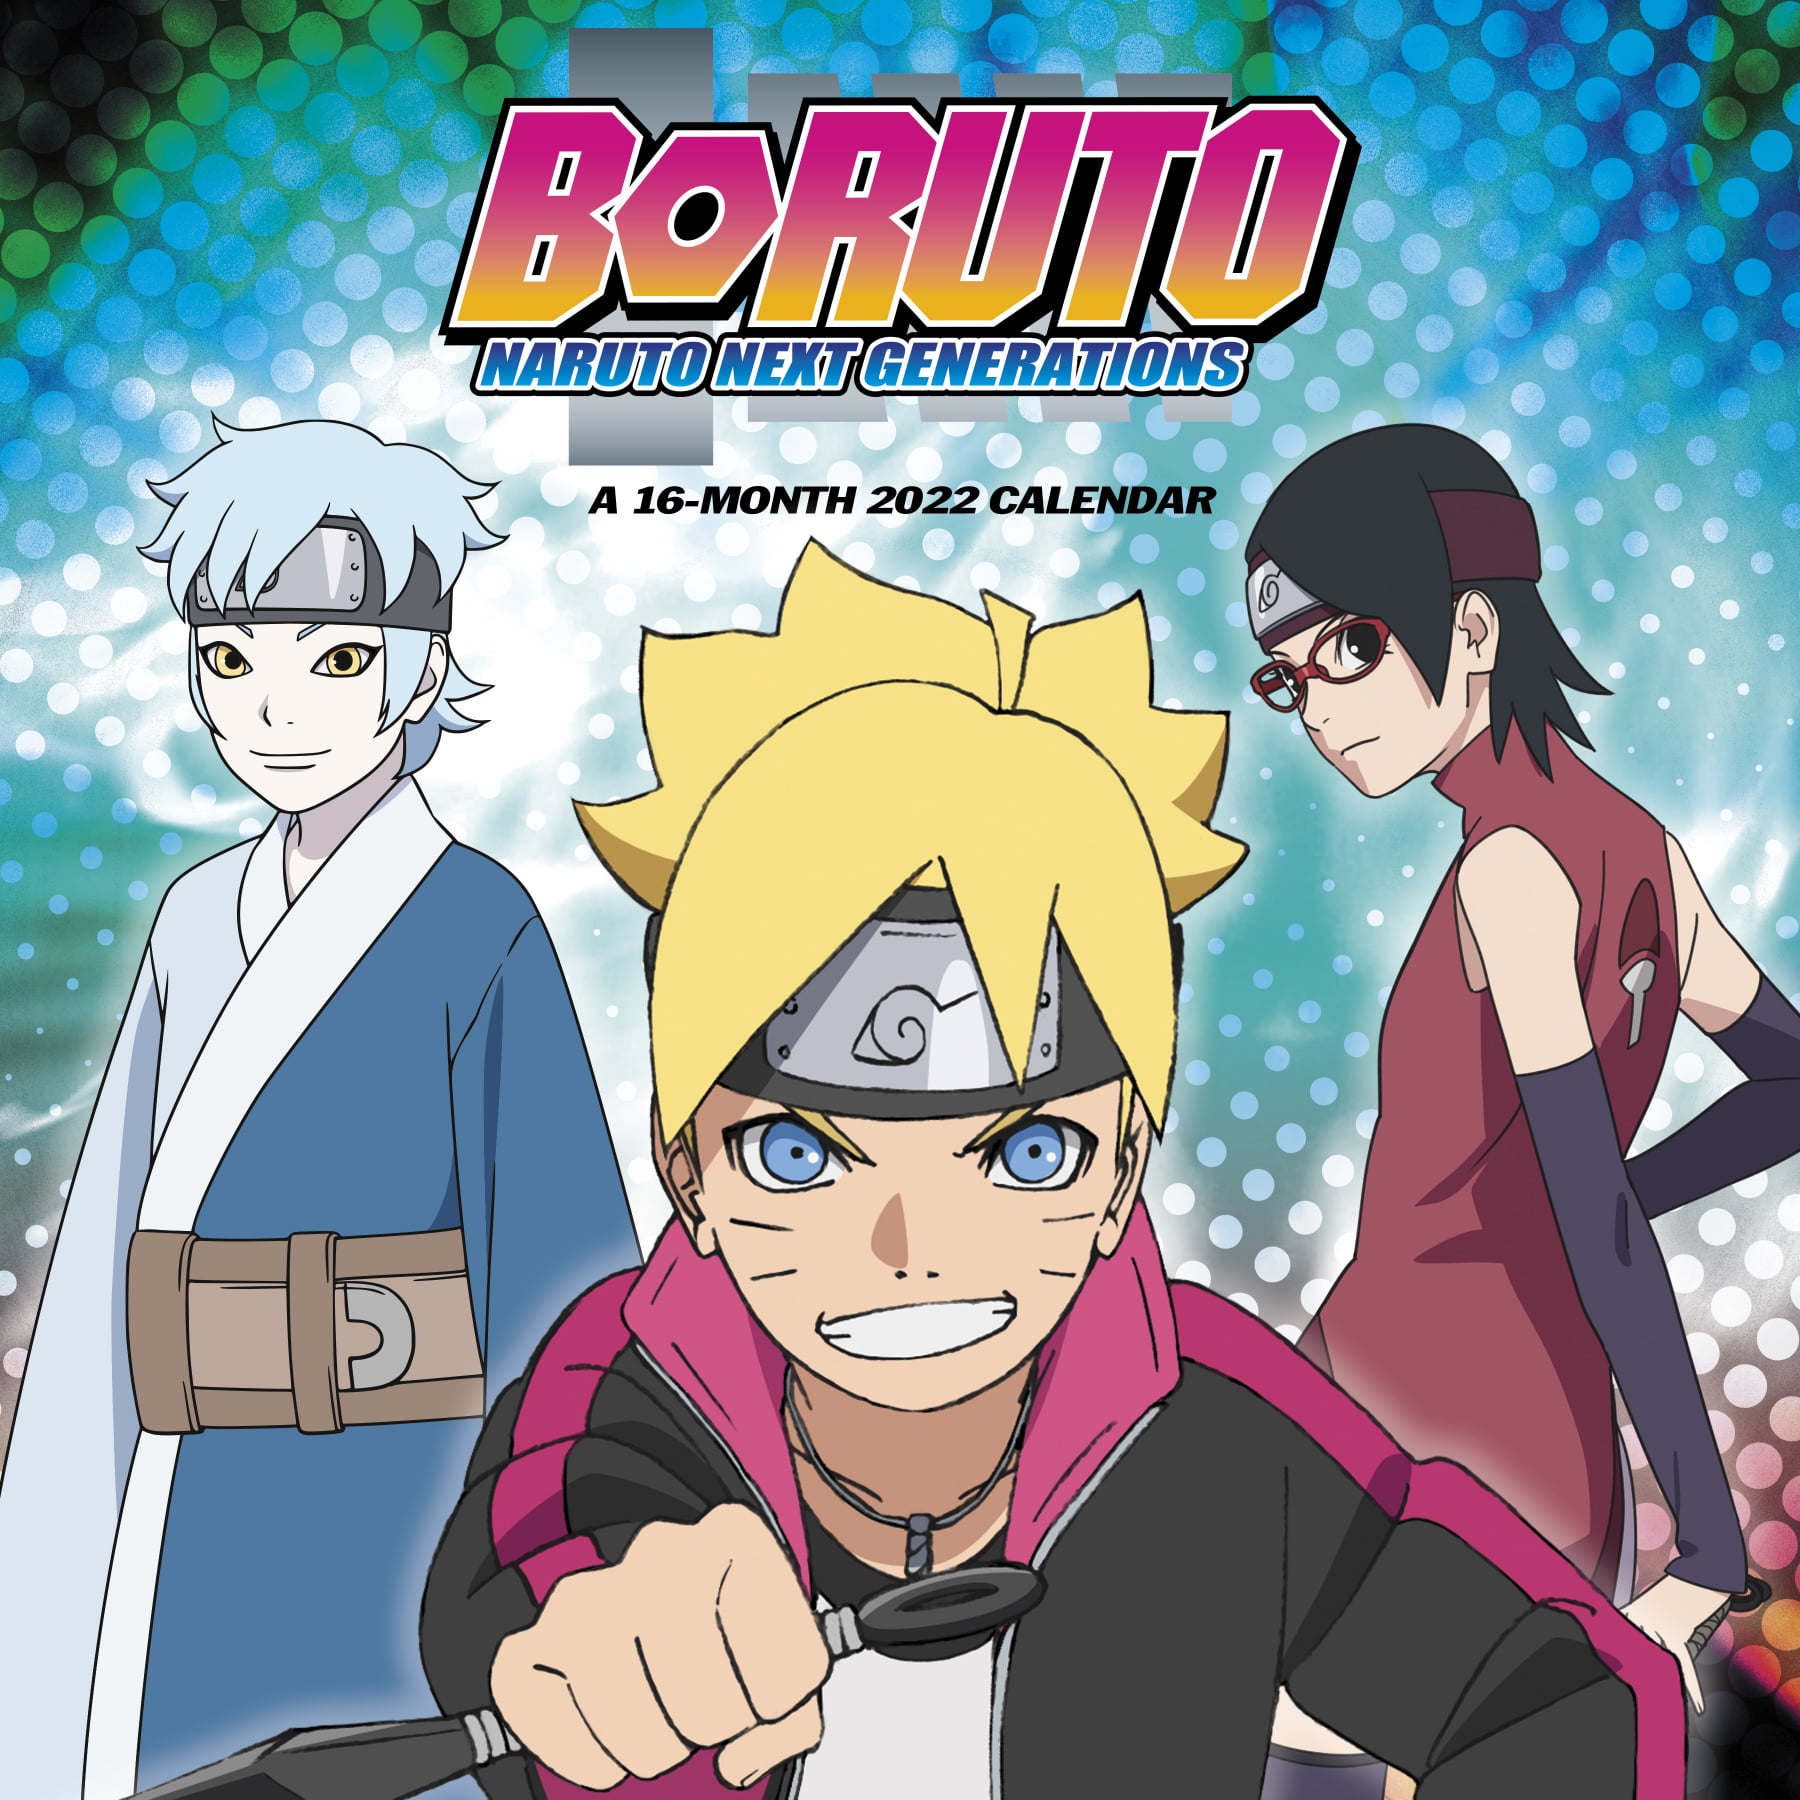 Boruto - Naruto Next Generations (10ª Temporada) - 9 de Janeiro de 2022